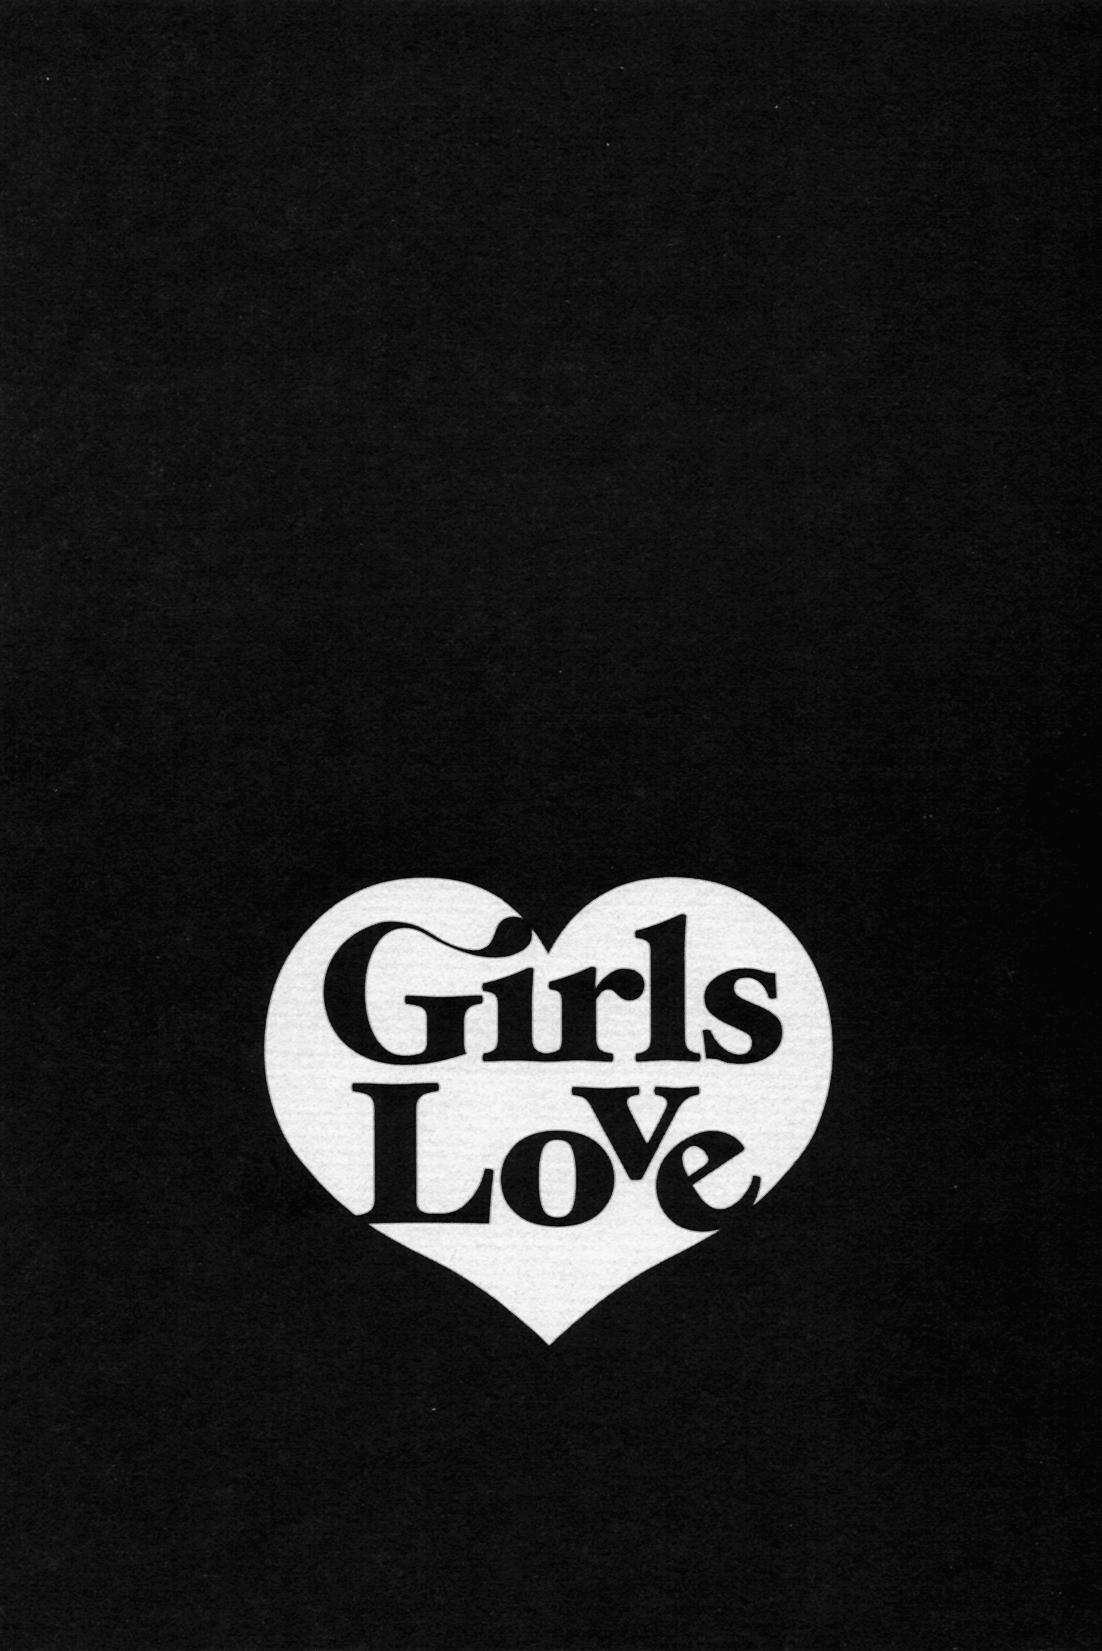 Girls Love 89